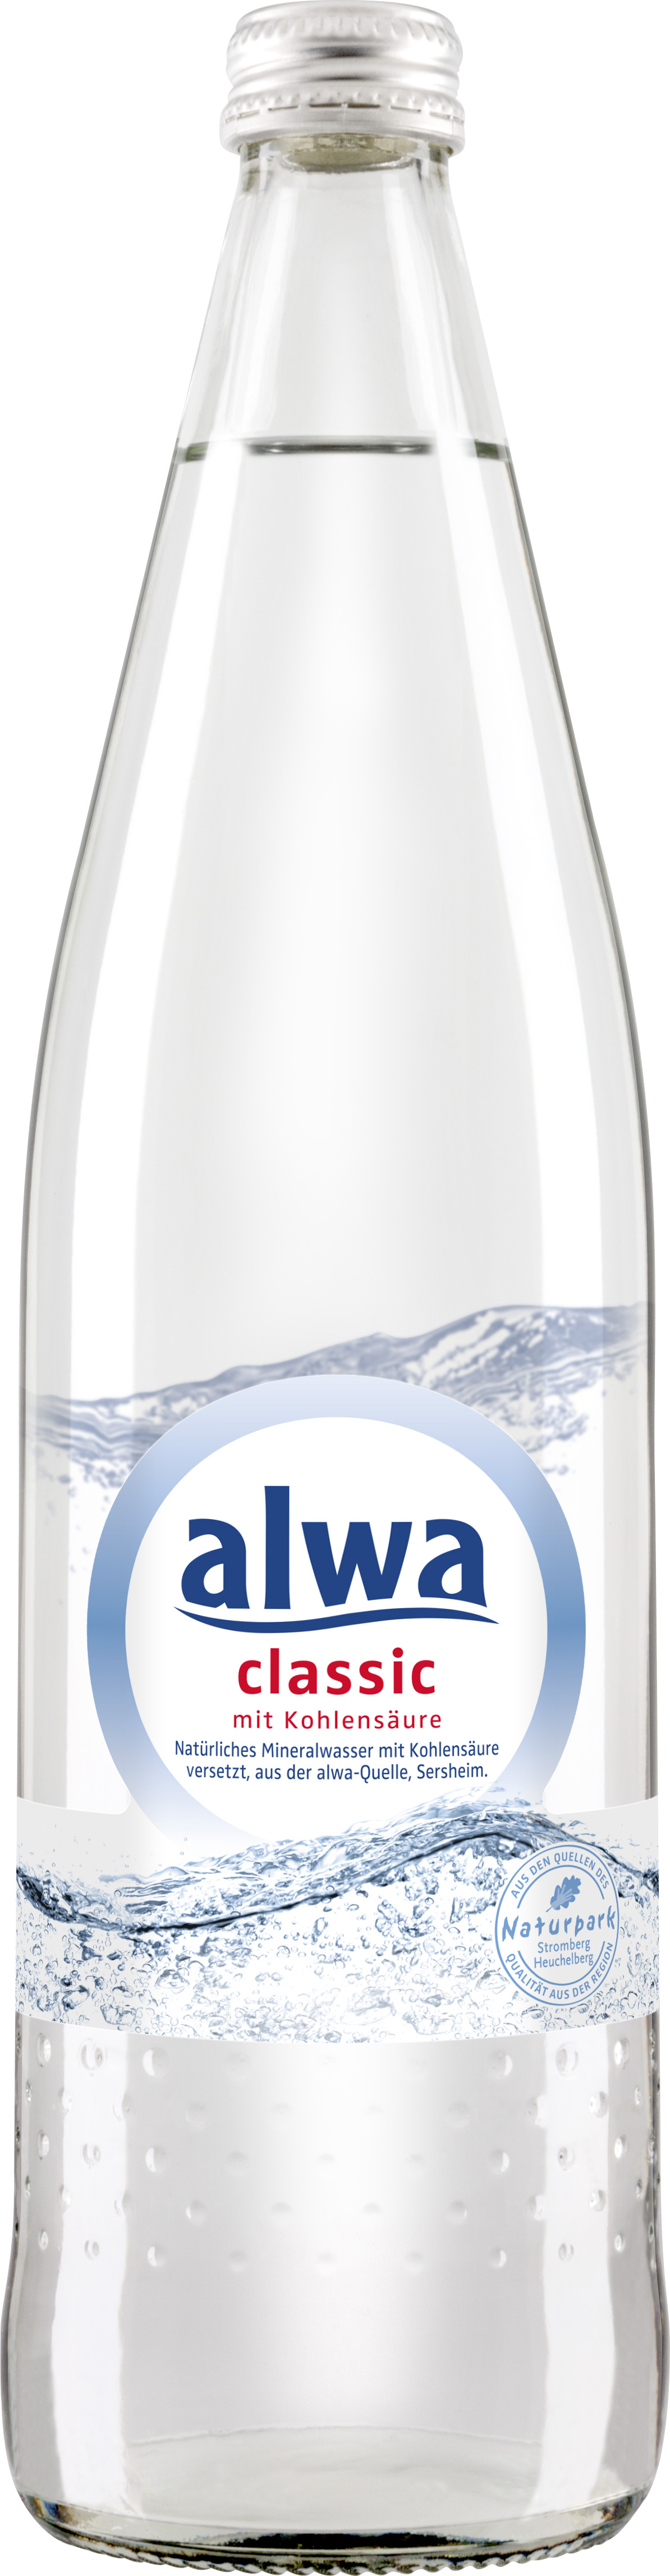 Alwa Classic mit Kohlensäure